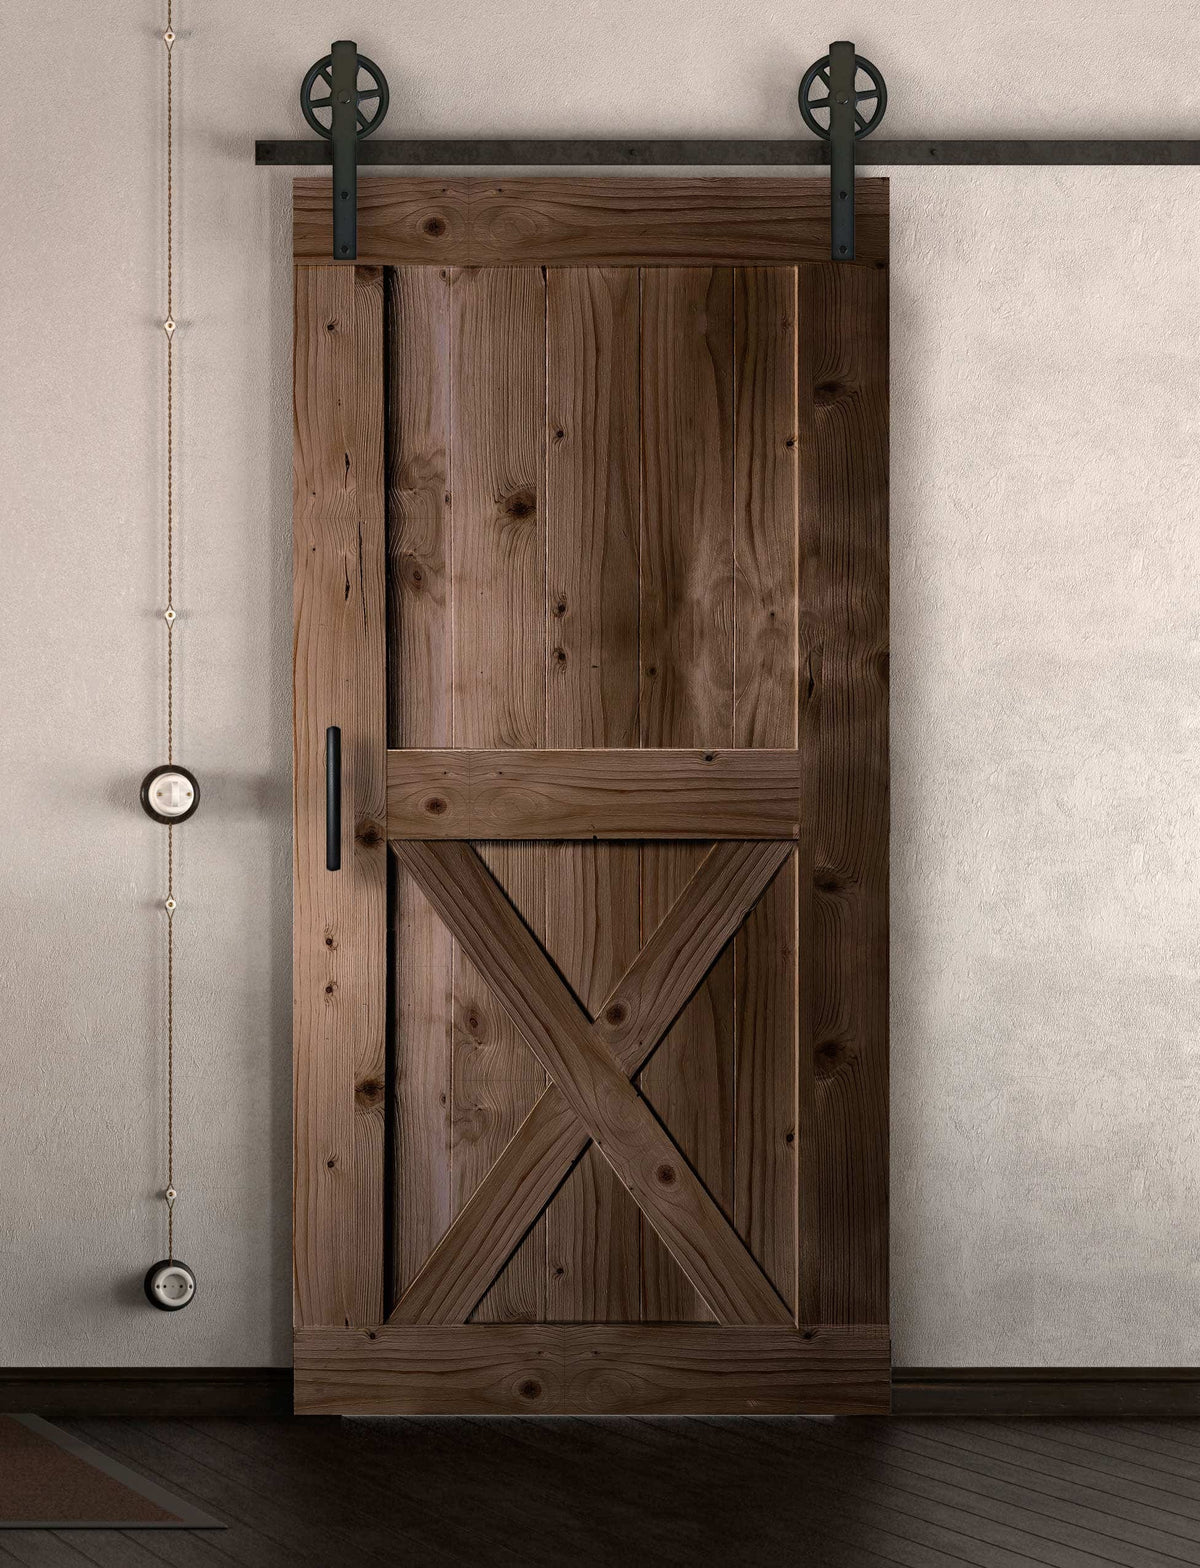 Schiebetür in Scheunentor Optik Modell X - Farmhouse Barn Door rustikal nach rechts öffnend / Muster nur Vorderseite / Nuss hell